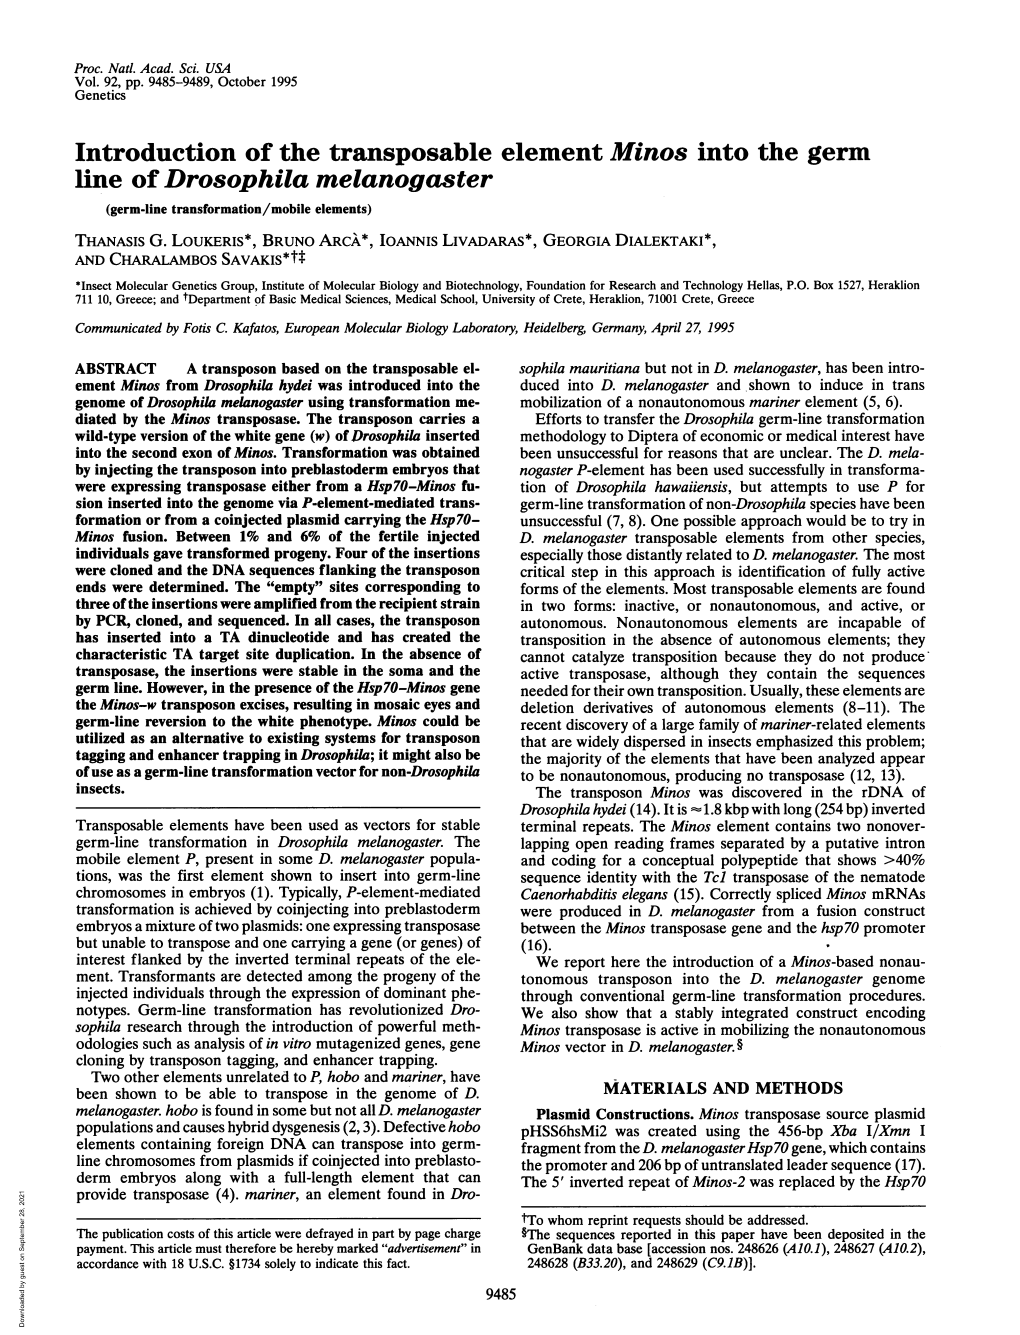 Line of Drosophila Melanogaster (Germ-Line Transformation/Mobile Elements) THANASIS G